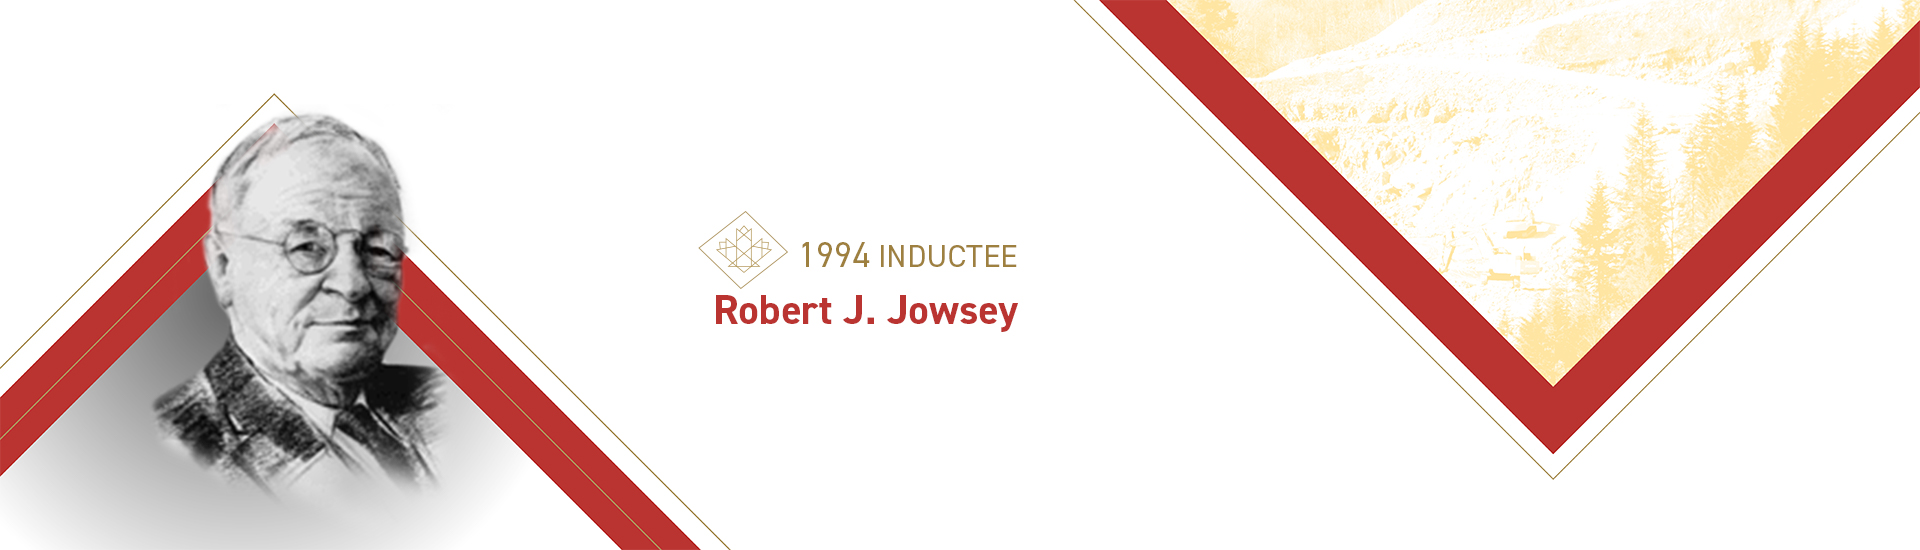 Robert J. Jowsey (1881 – 1965)